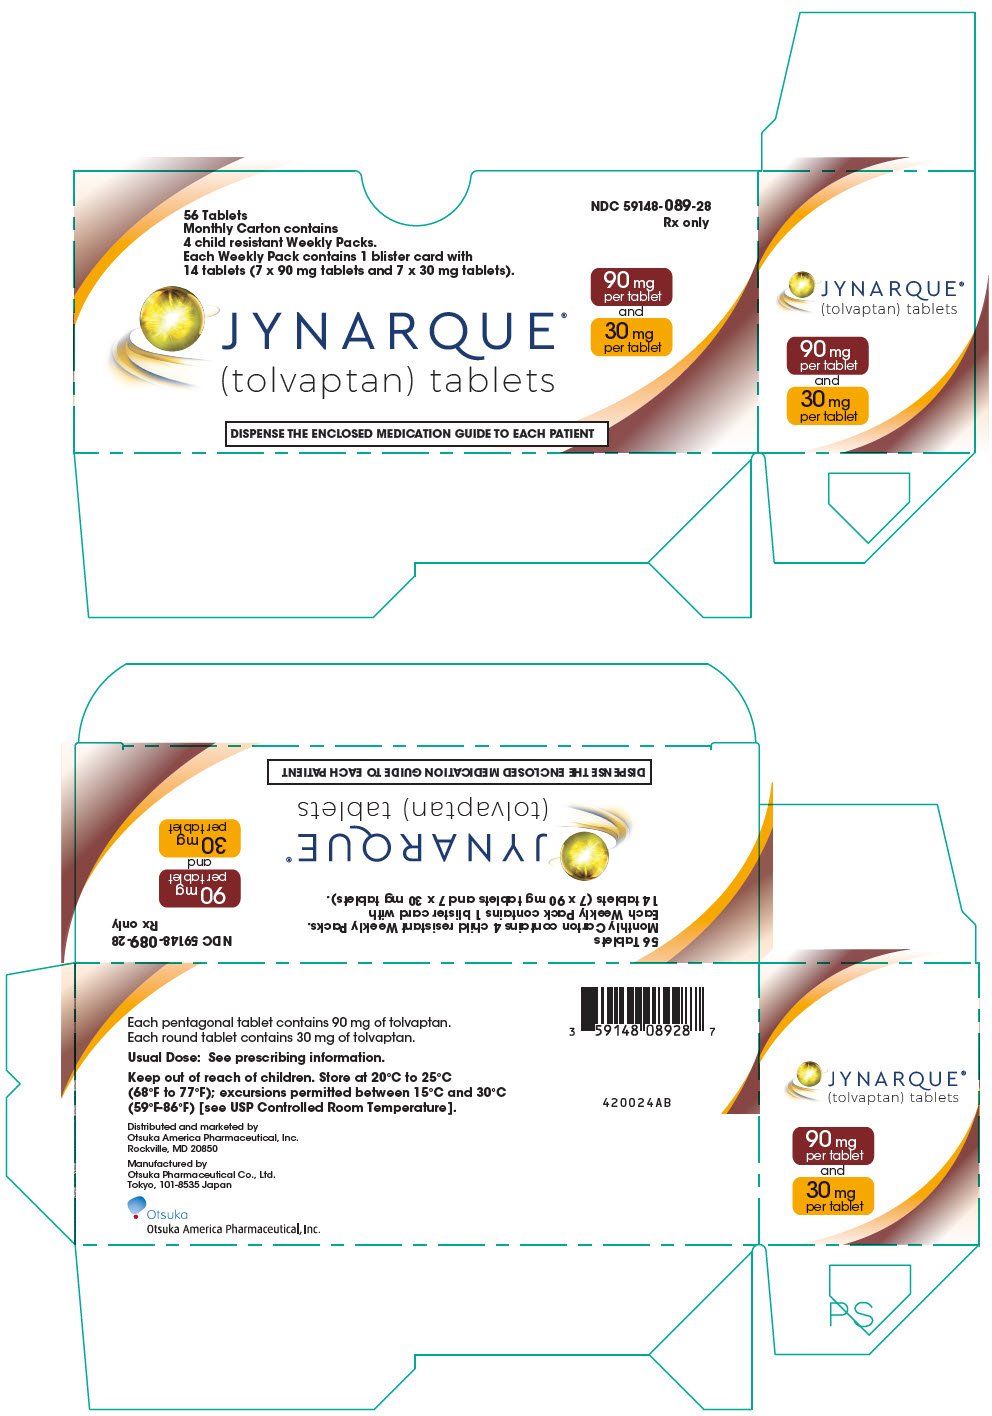 PRINCIPAL DISPLAY PANEL - Kit Carton - 90 mg and 30 mg